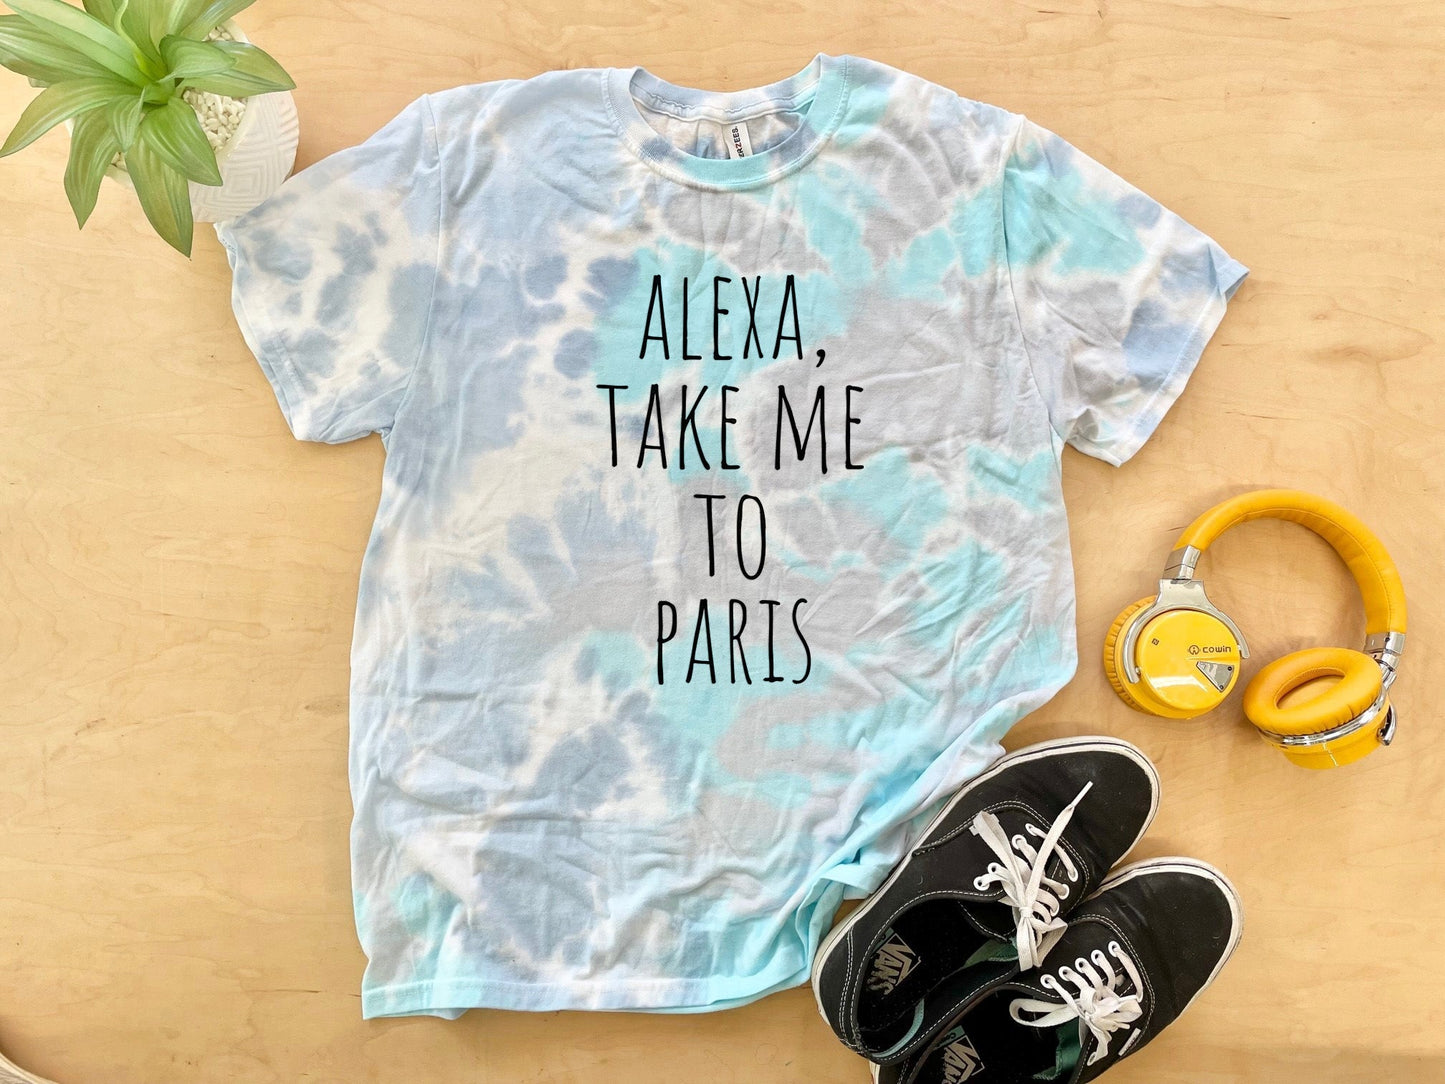 Alexa, Take Me To Paris - Mens/Unisex Tie Dye Tee - Blue